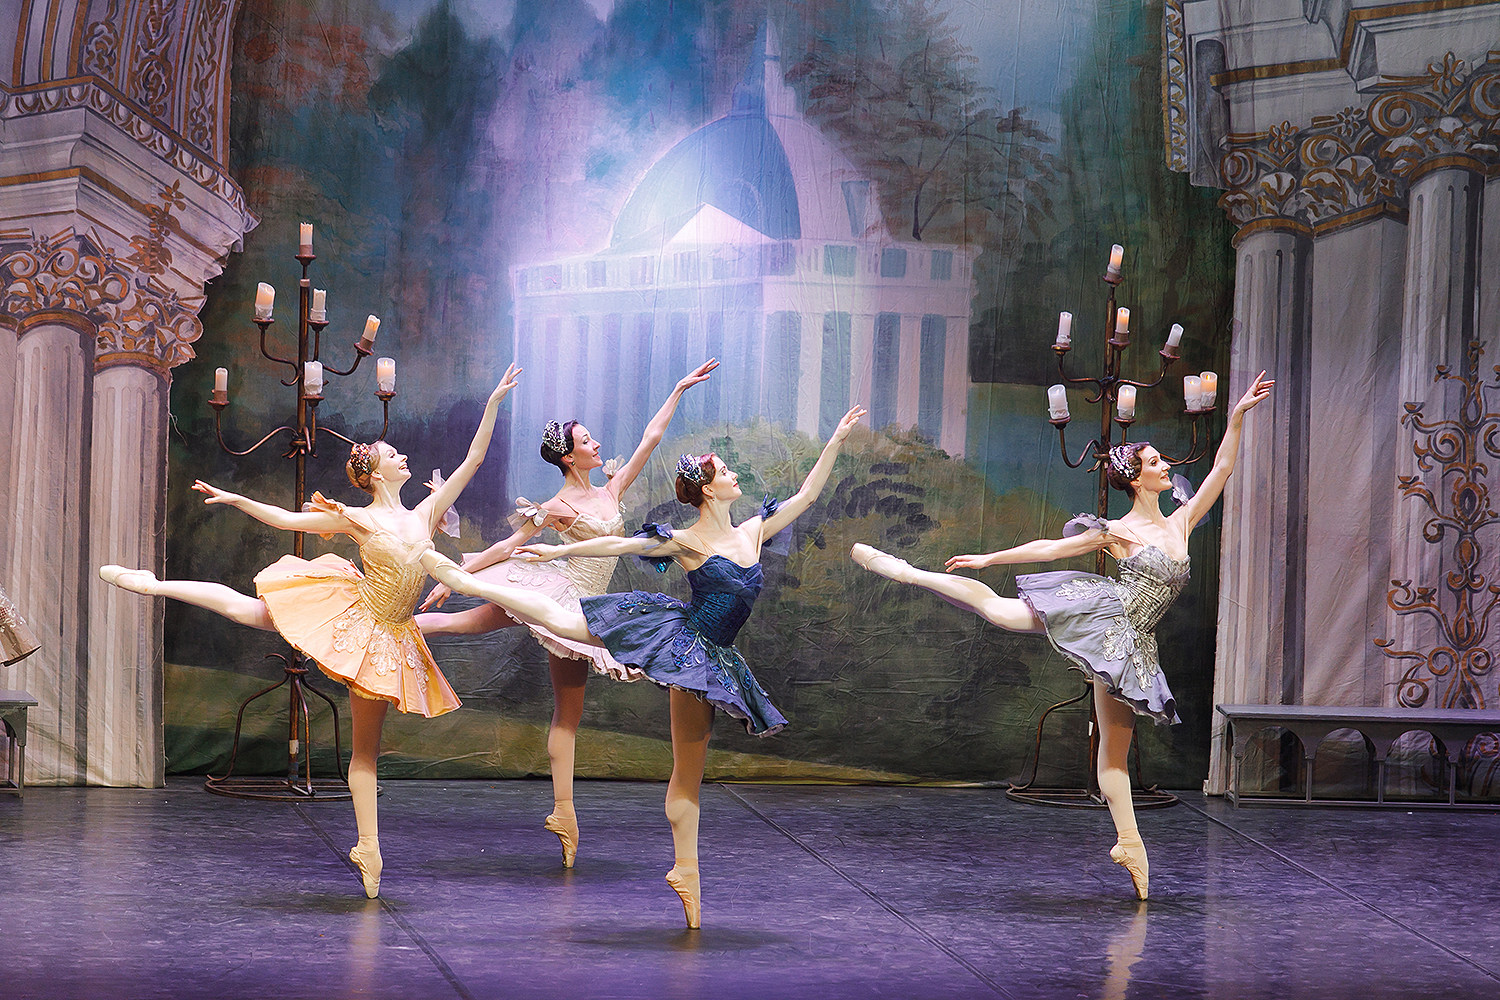 спящая красавица балет михайловский театр